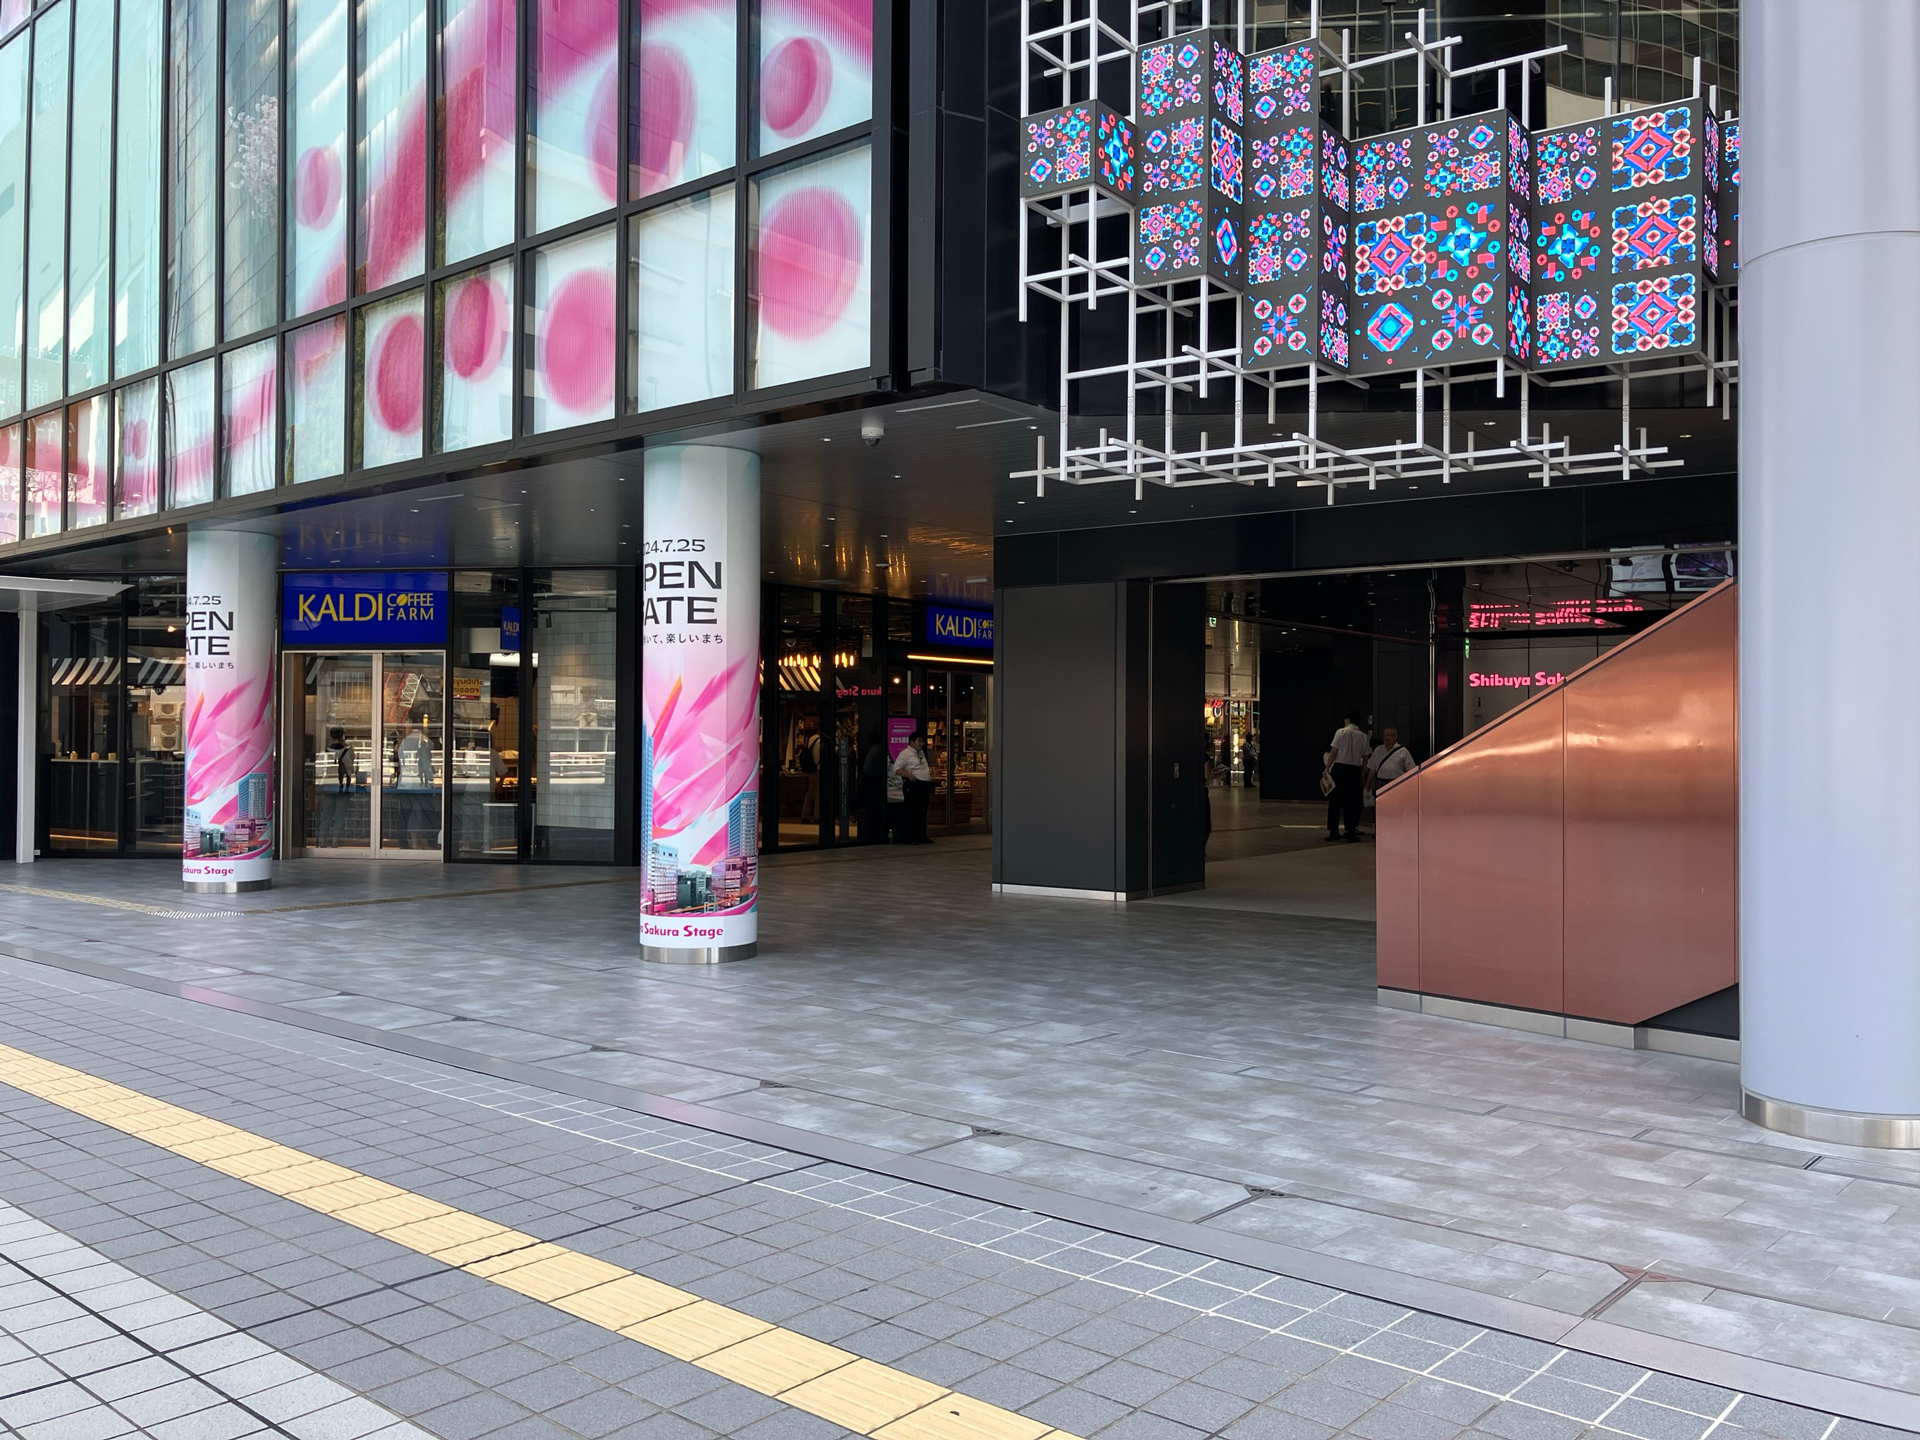 ビジネスエアポート渋谷サクラステージ エスカレーター正面の自動ドアから「渋谷サクラステージ」に入館